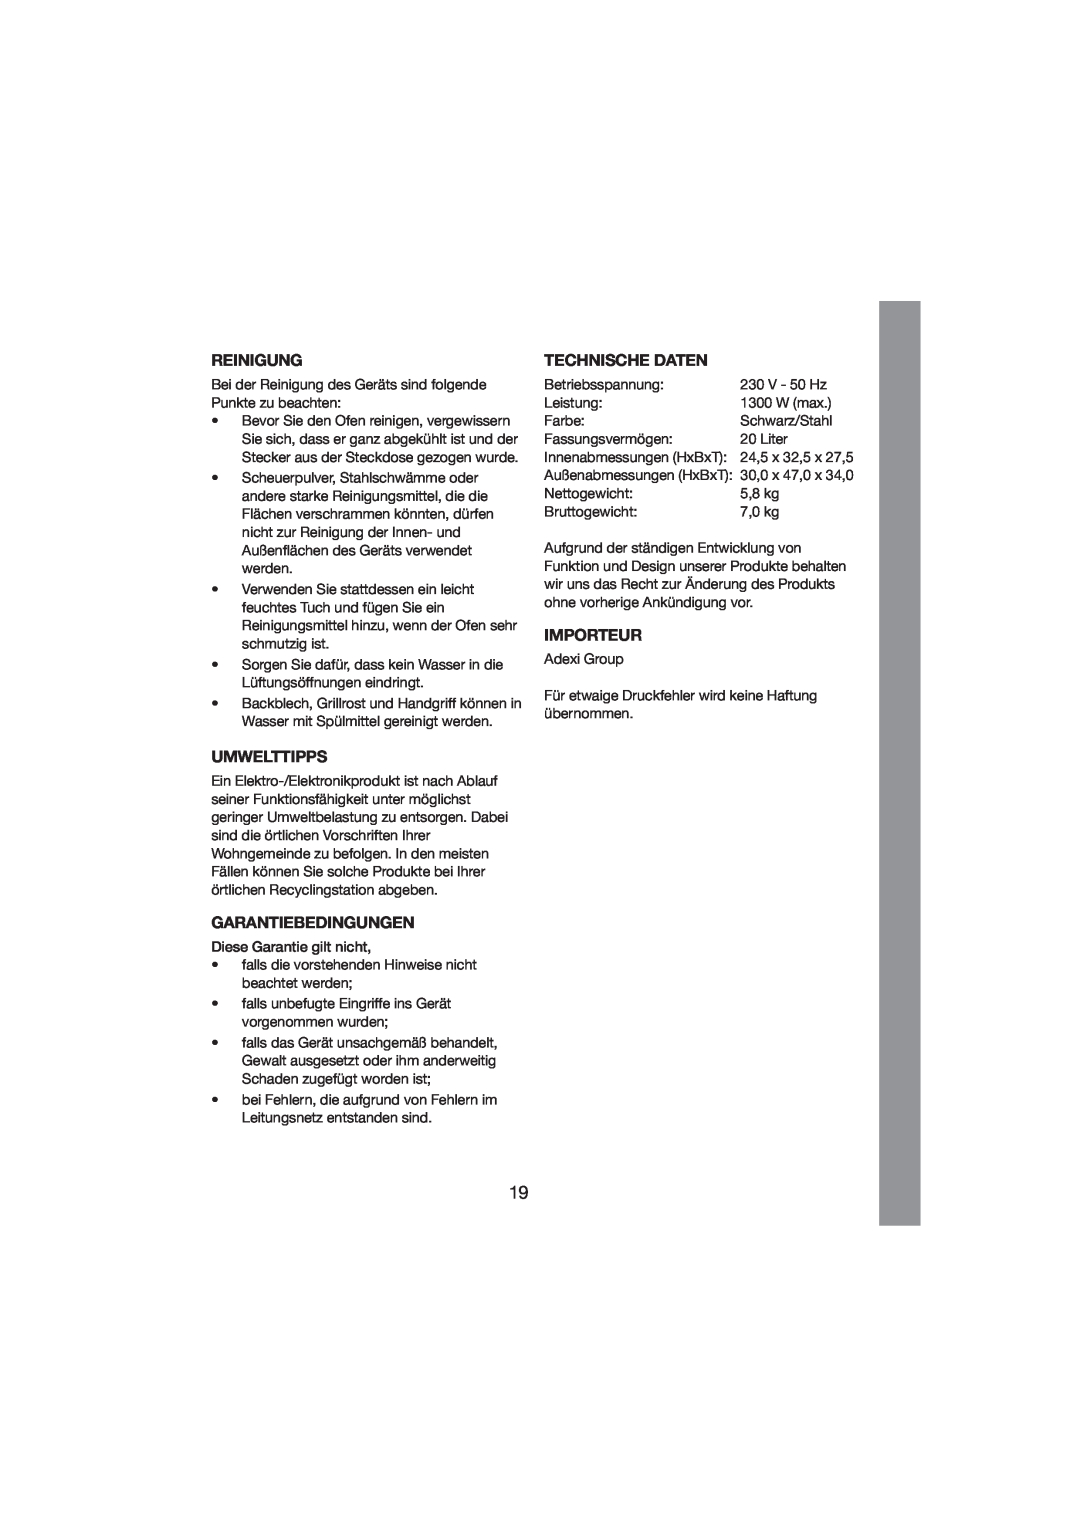 Melissa 251-003/004 manual Reinigung, Umwelttipps, Garantiebedingungen, Technische Daten, Importeur 